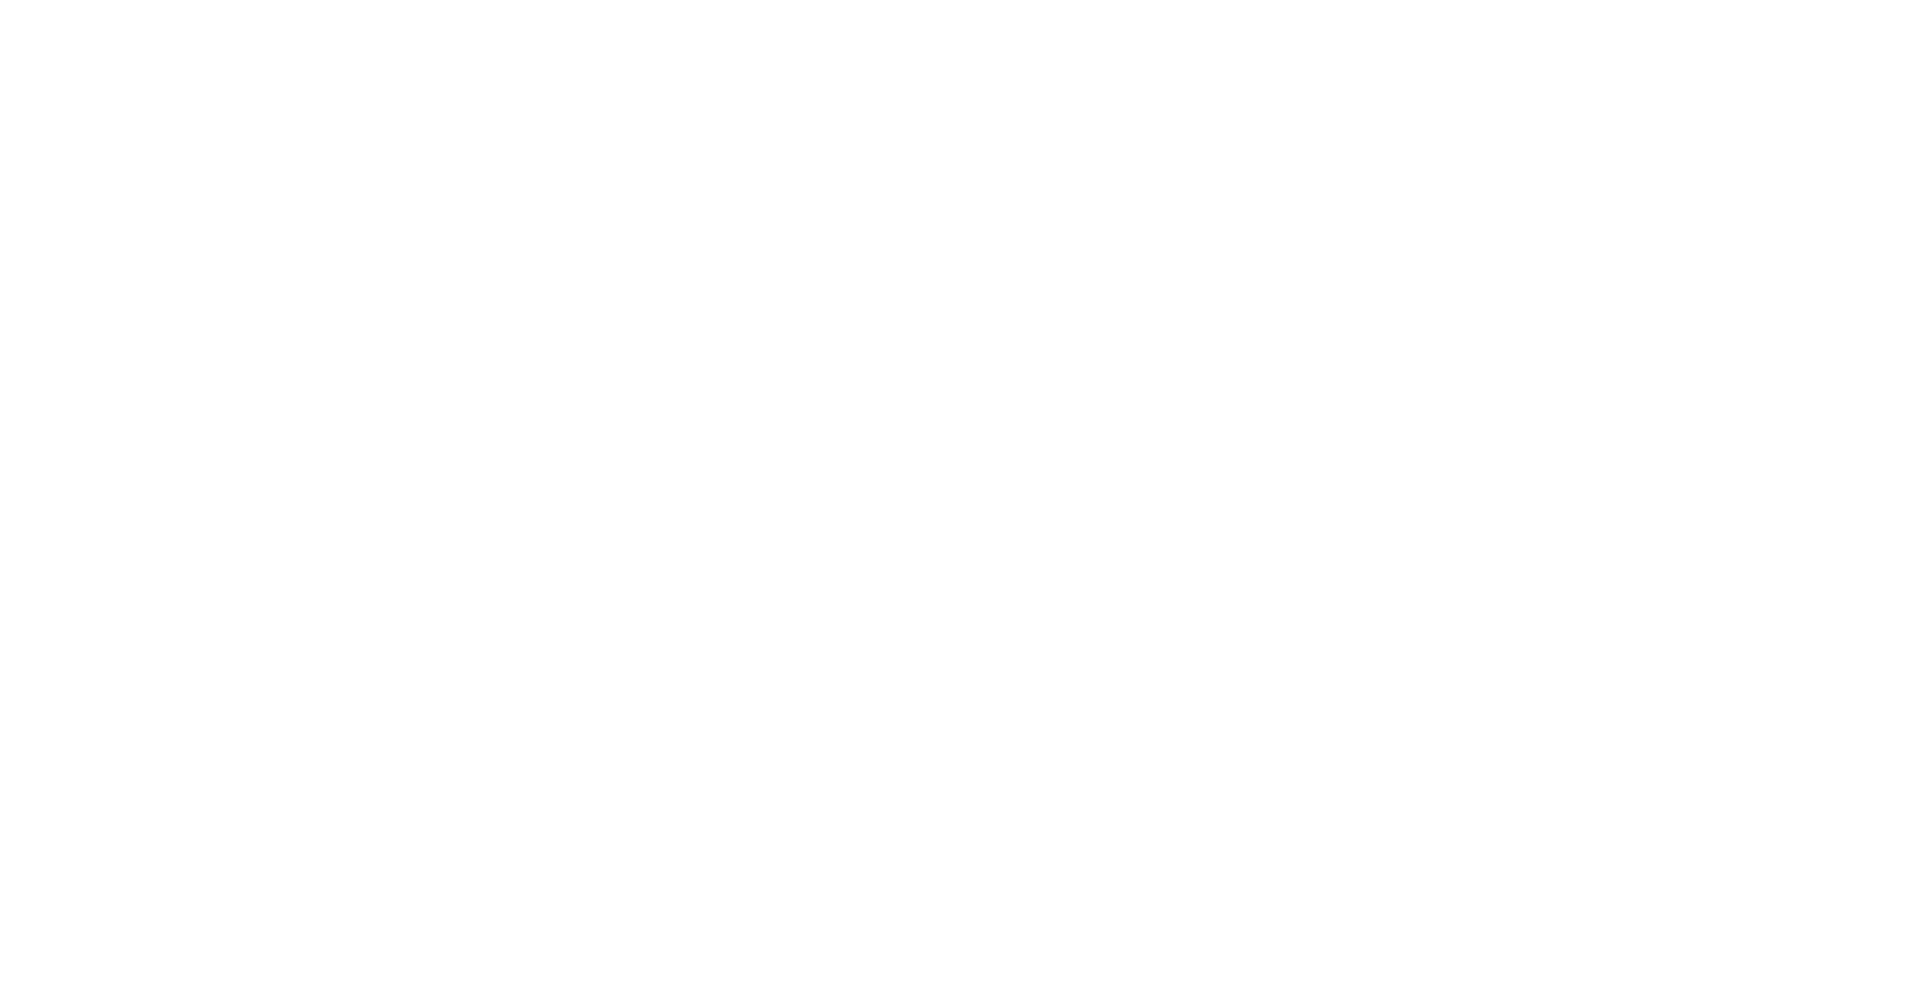 Doctor Larry logo